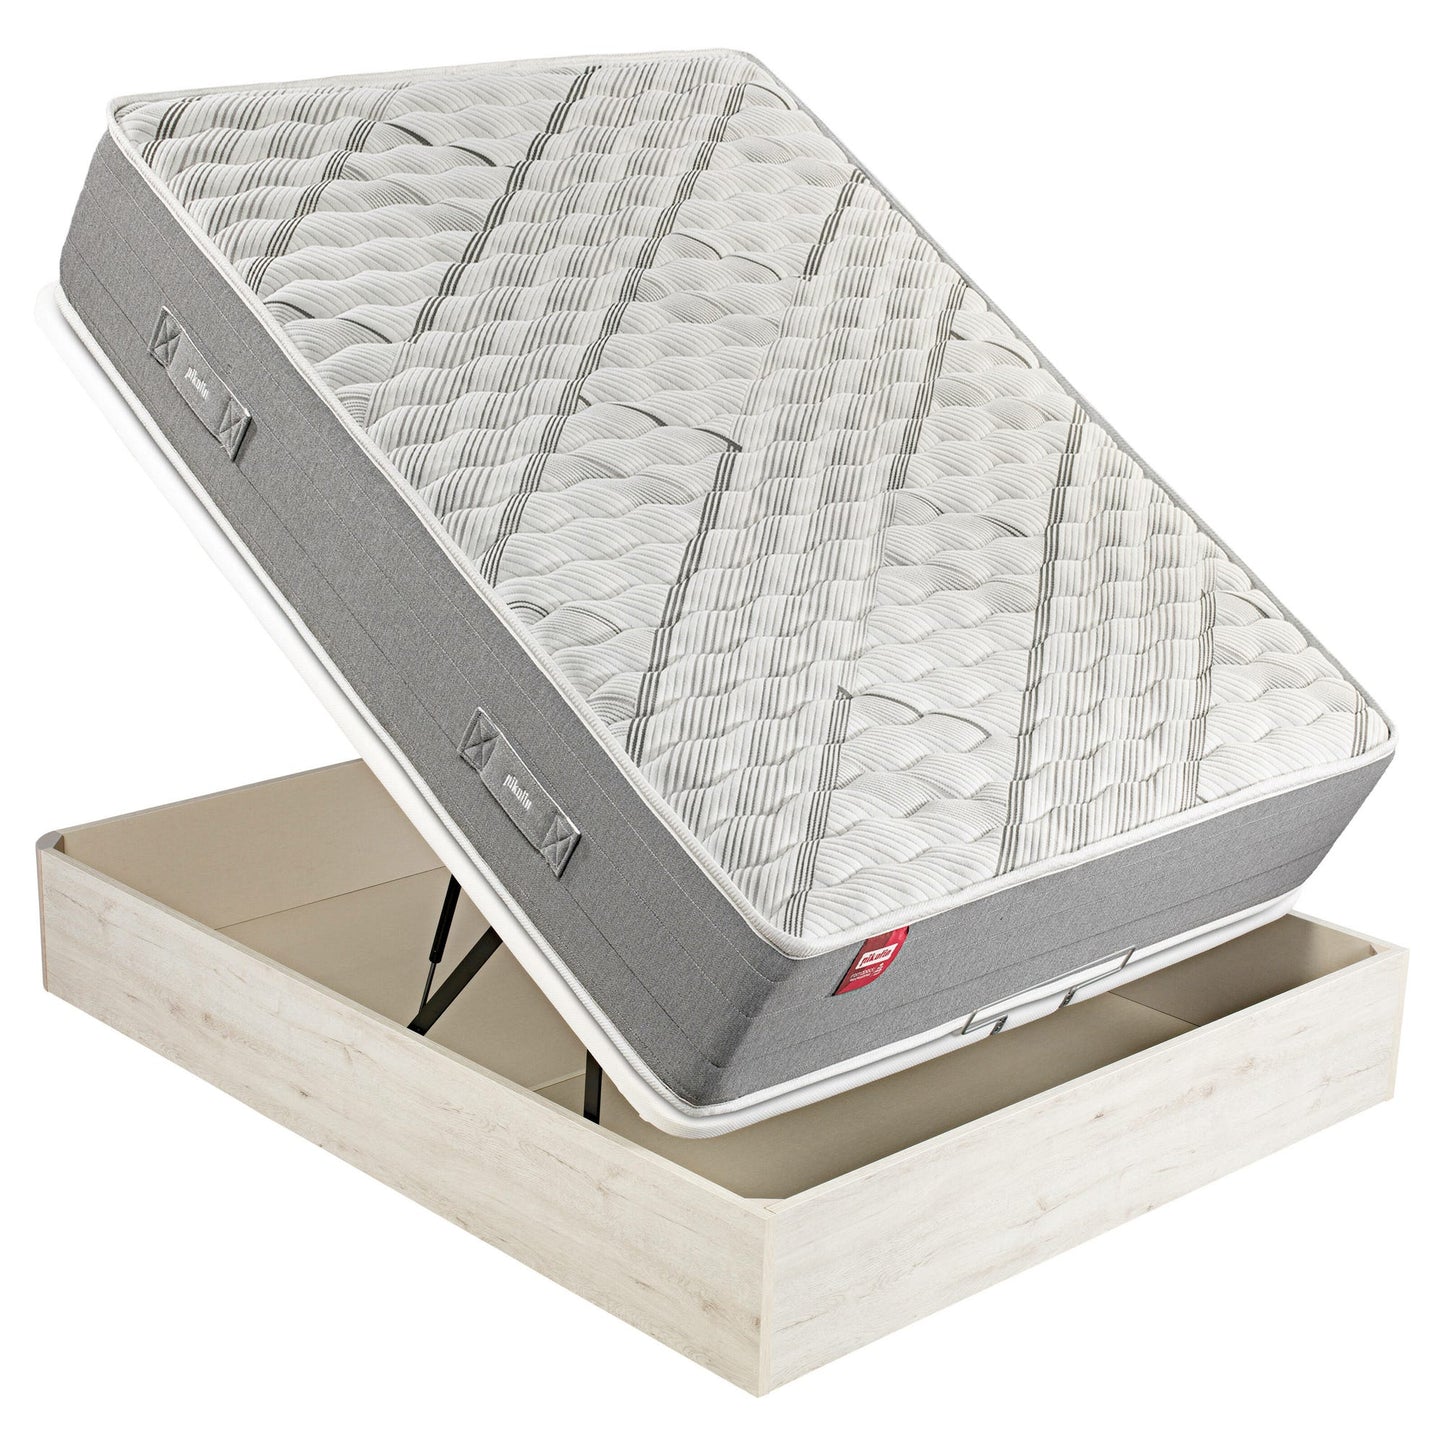 Pack de colchón de muelles Normablock, canapé abatible de color glaciar y 2 almohadas de visco - ARCE+AP11518+AL - 150x200